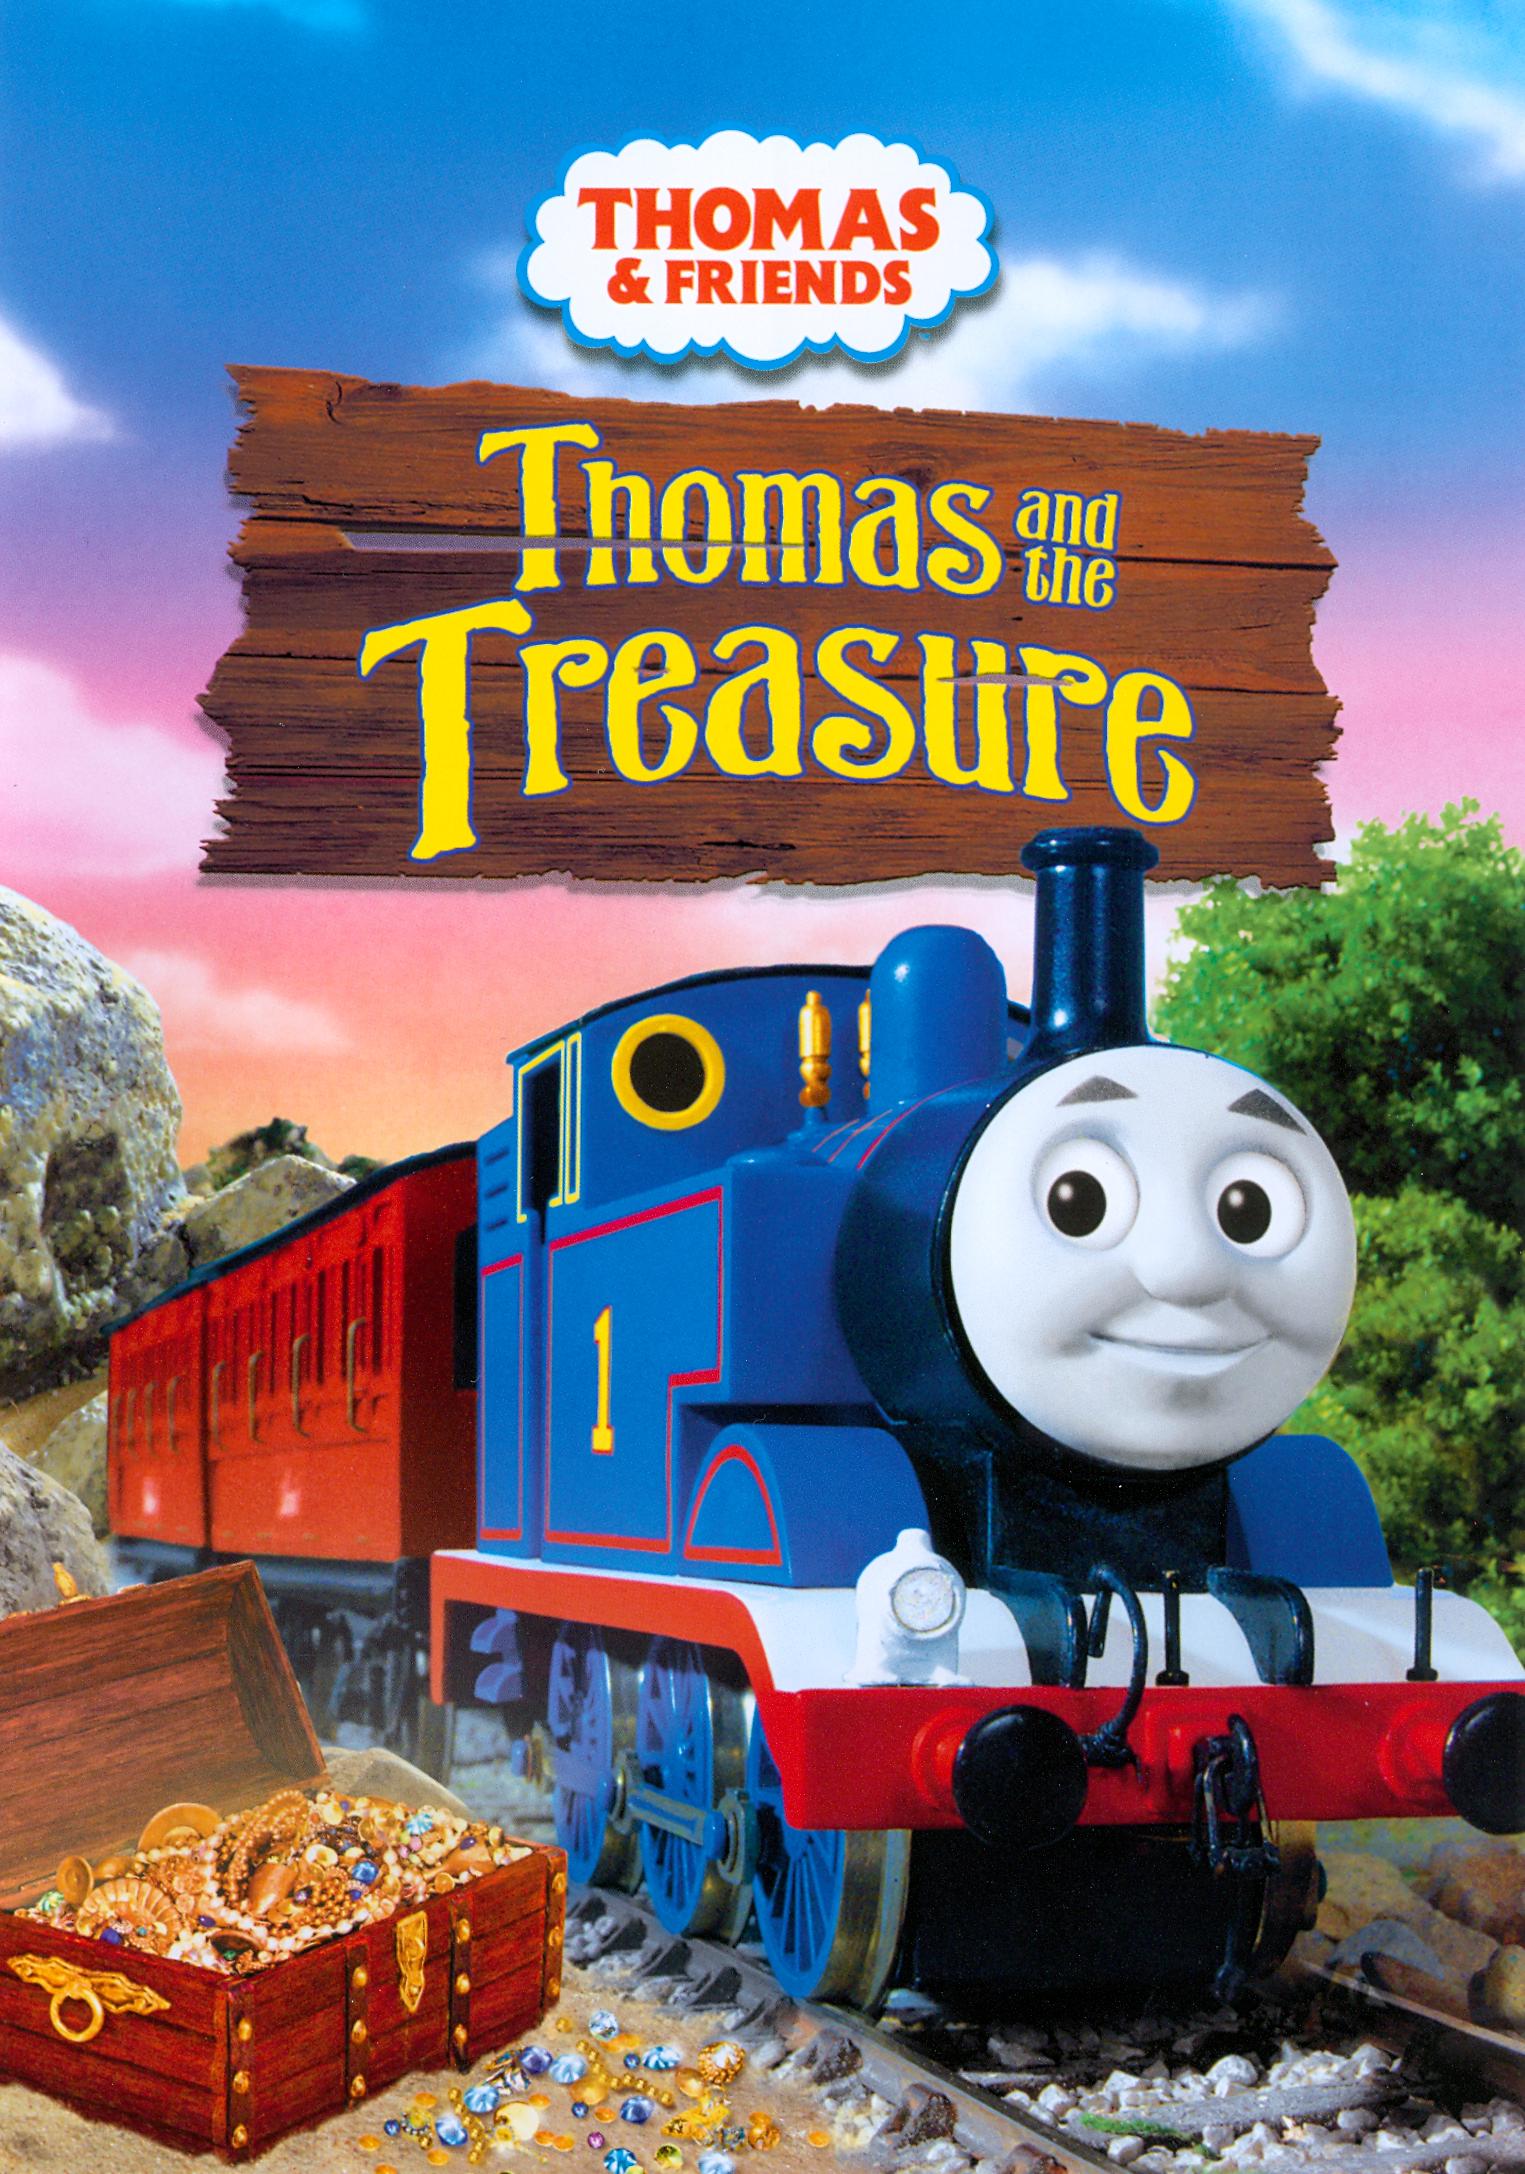 Thomas The Tank Engine Dvd